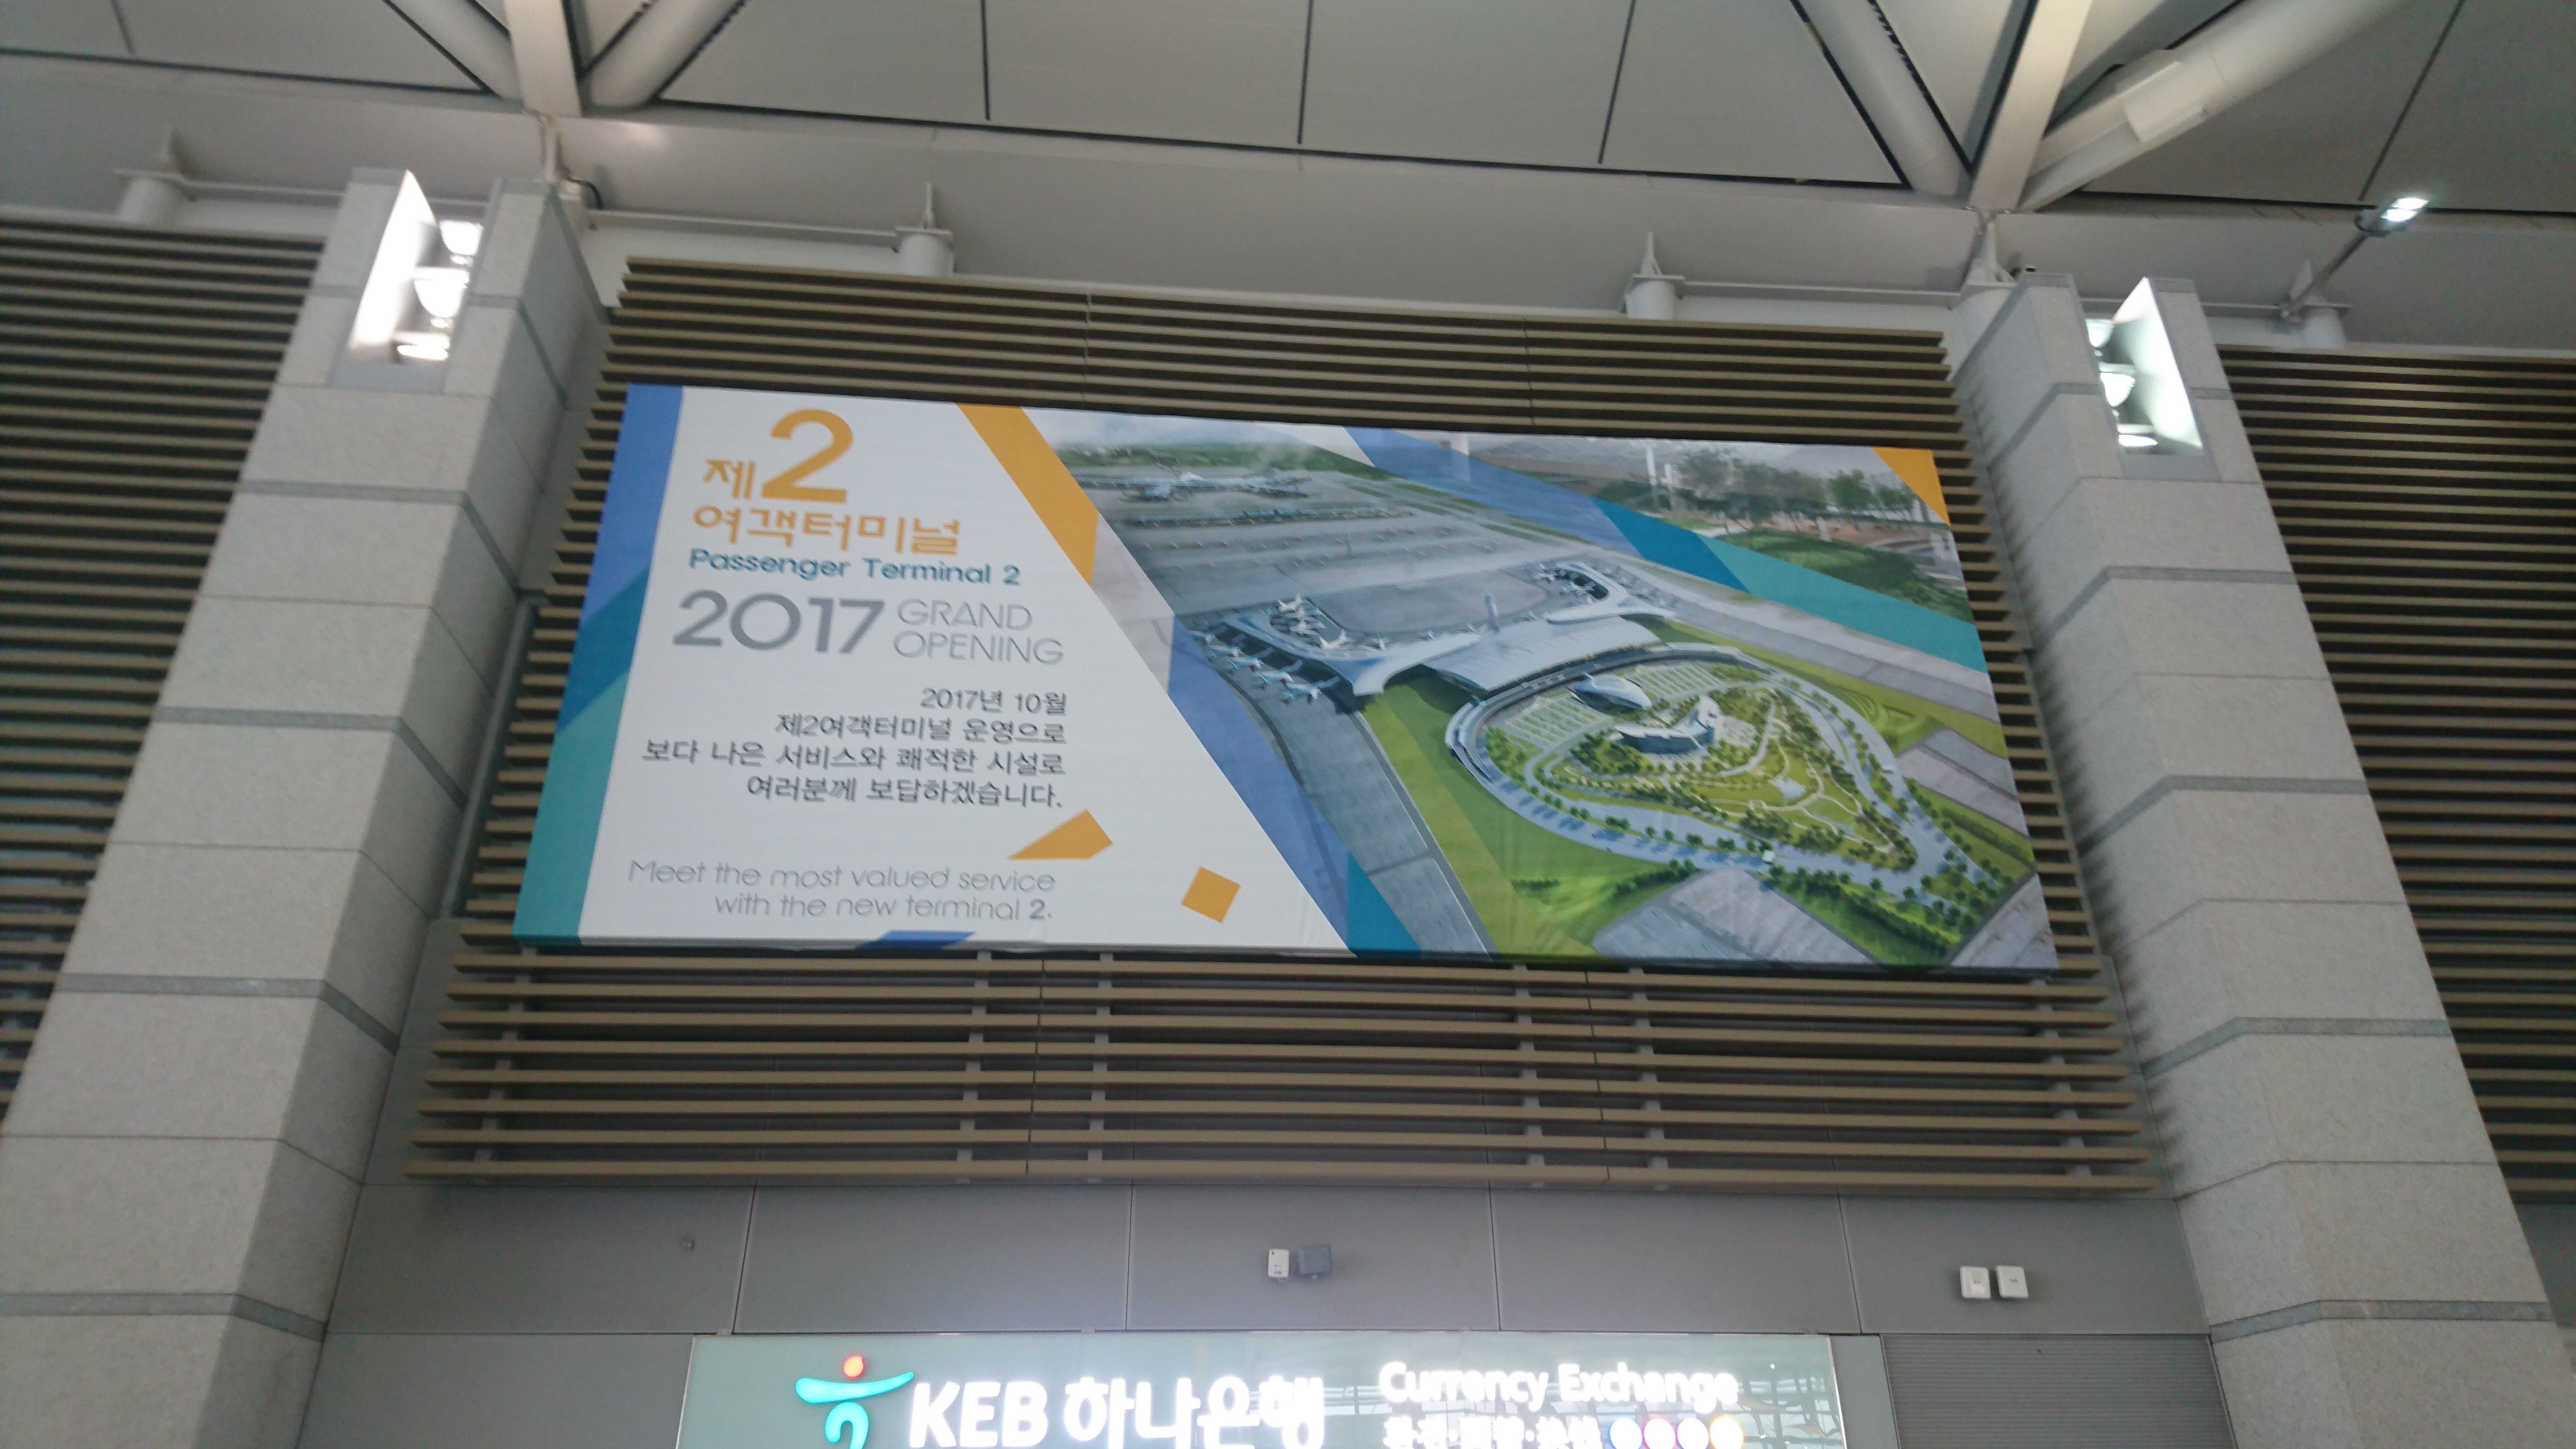 仁川国際空港に新しい第二旅客ターミナル